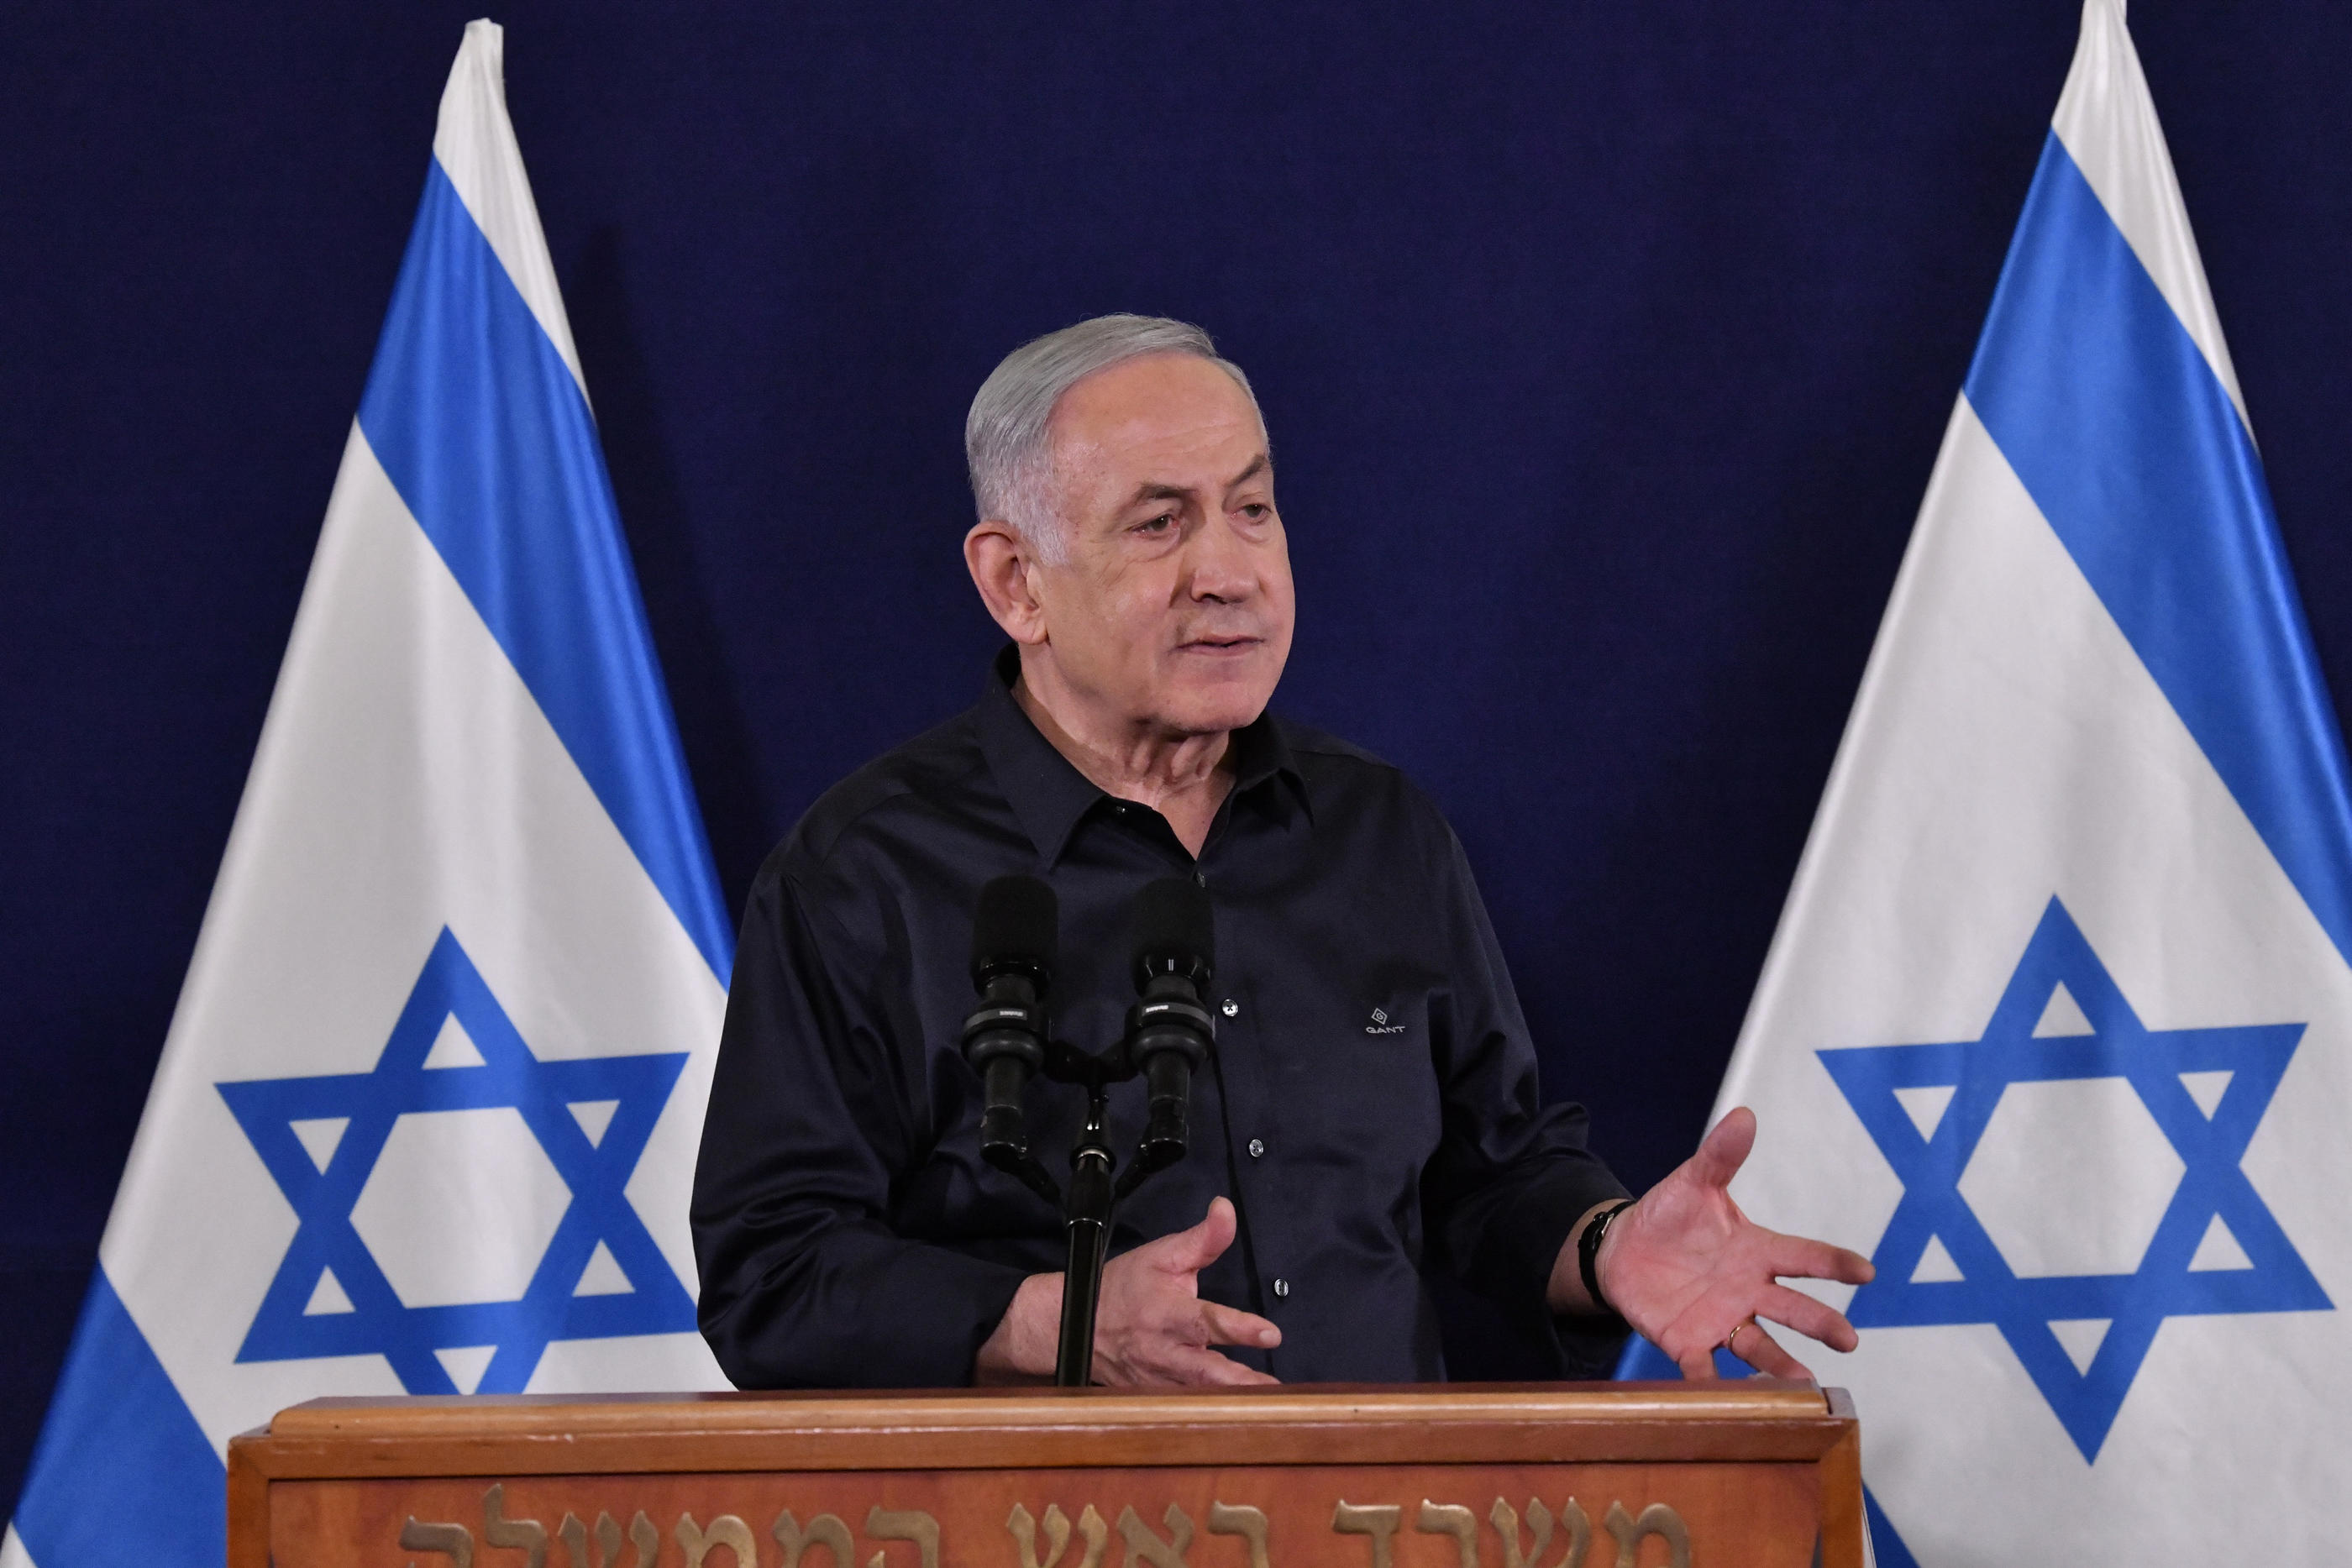 Le premier ministre israélien s'est exprimé ce mercredi sur l'accord pour les otages. (JINI via Xinhua) - Photo by Icon sport